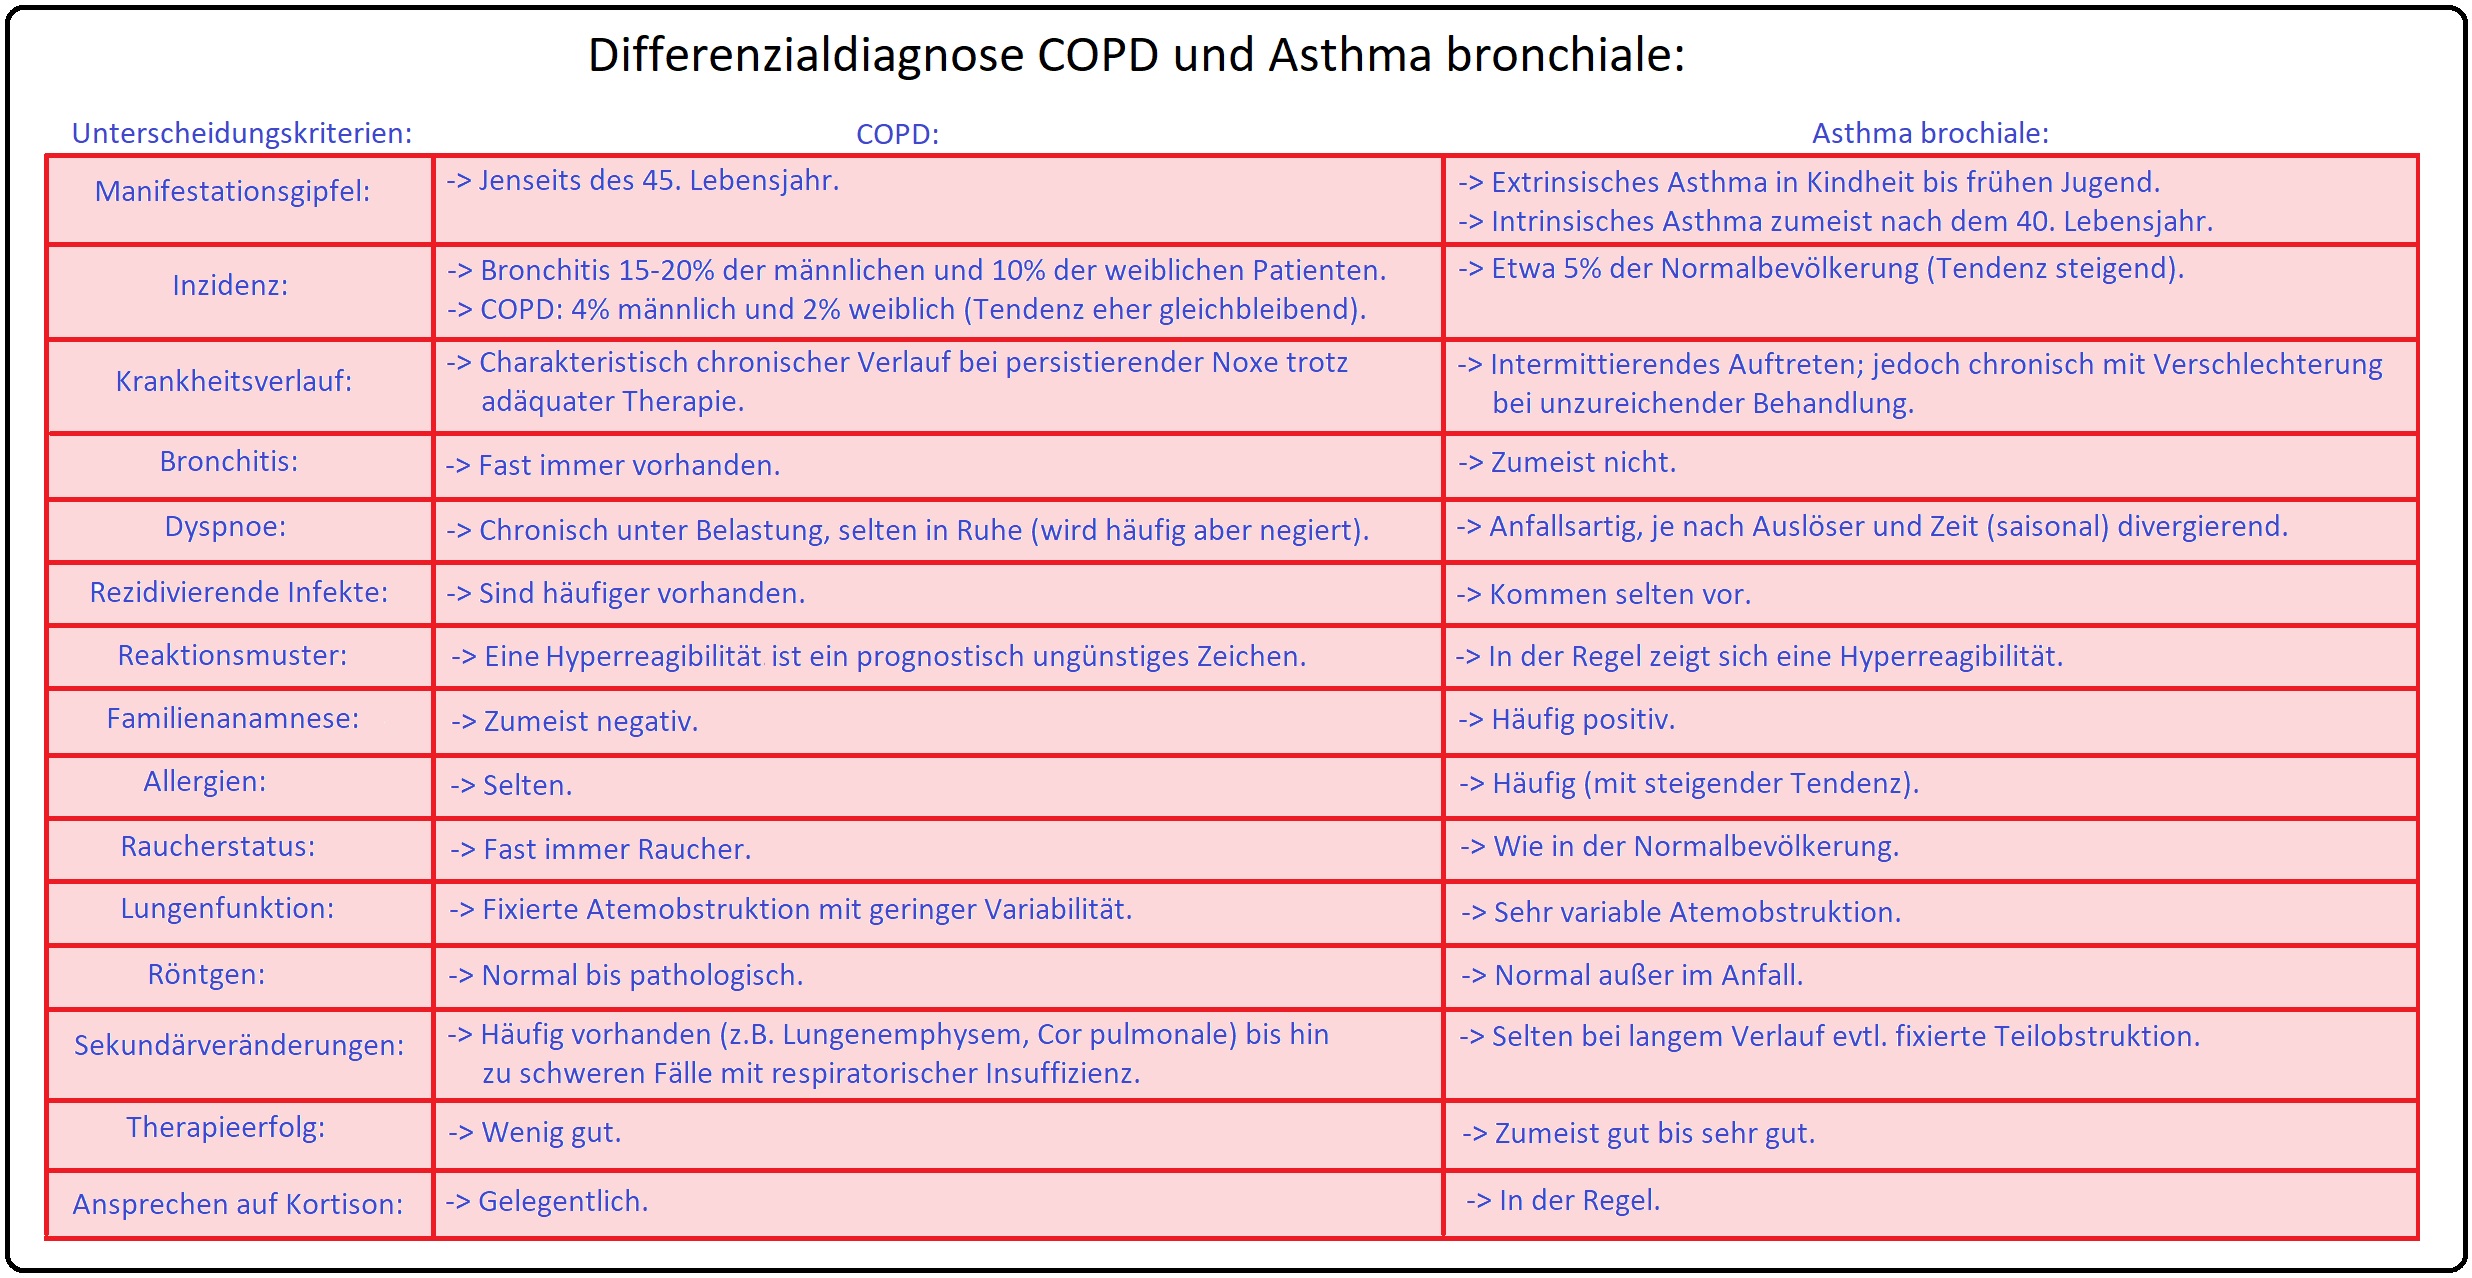 1218 Differenzialdiagnose COPD und Asthma bronchiale